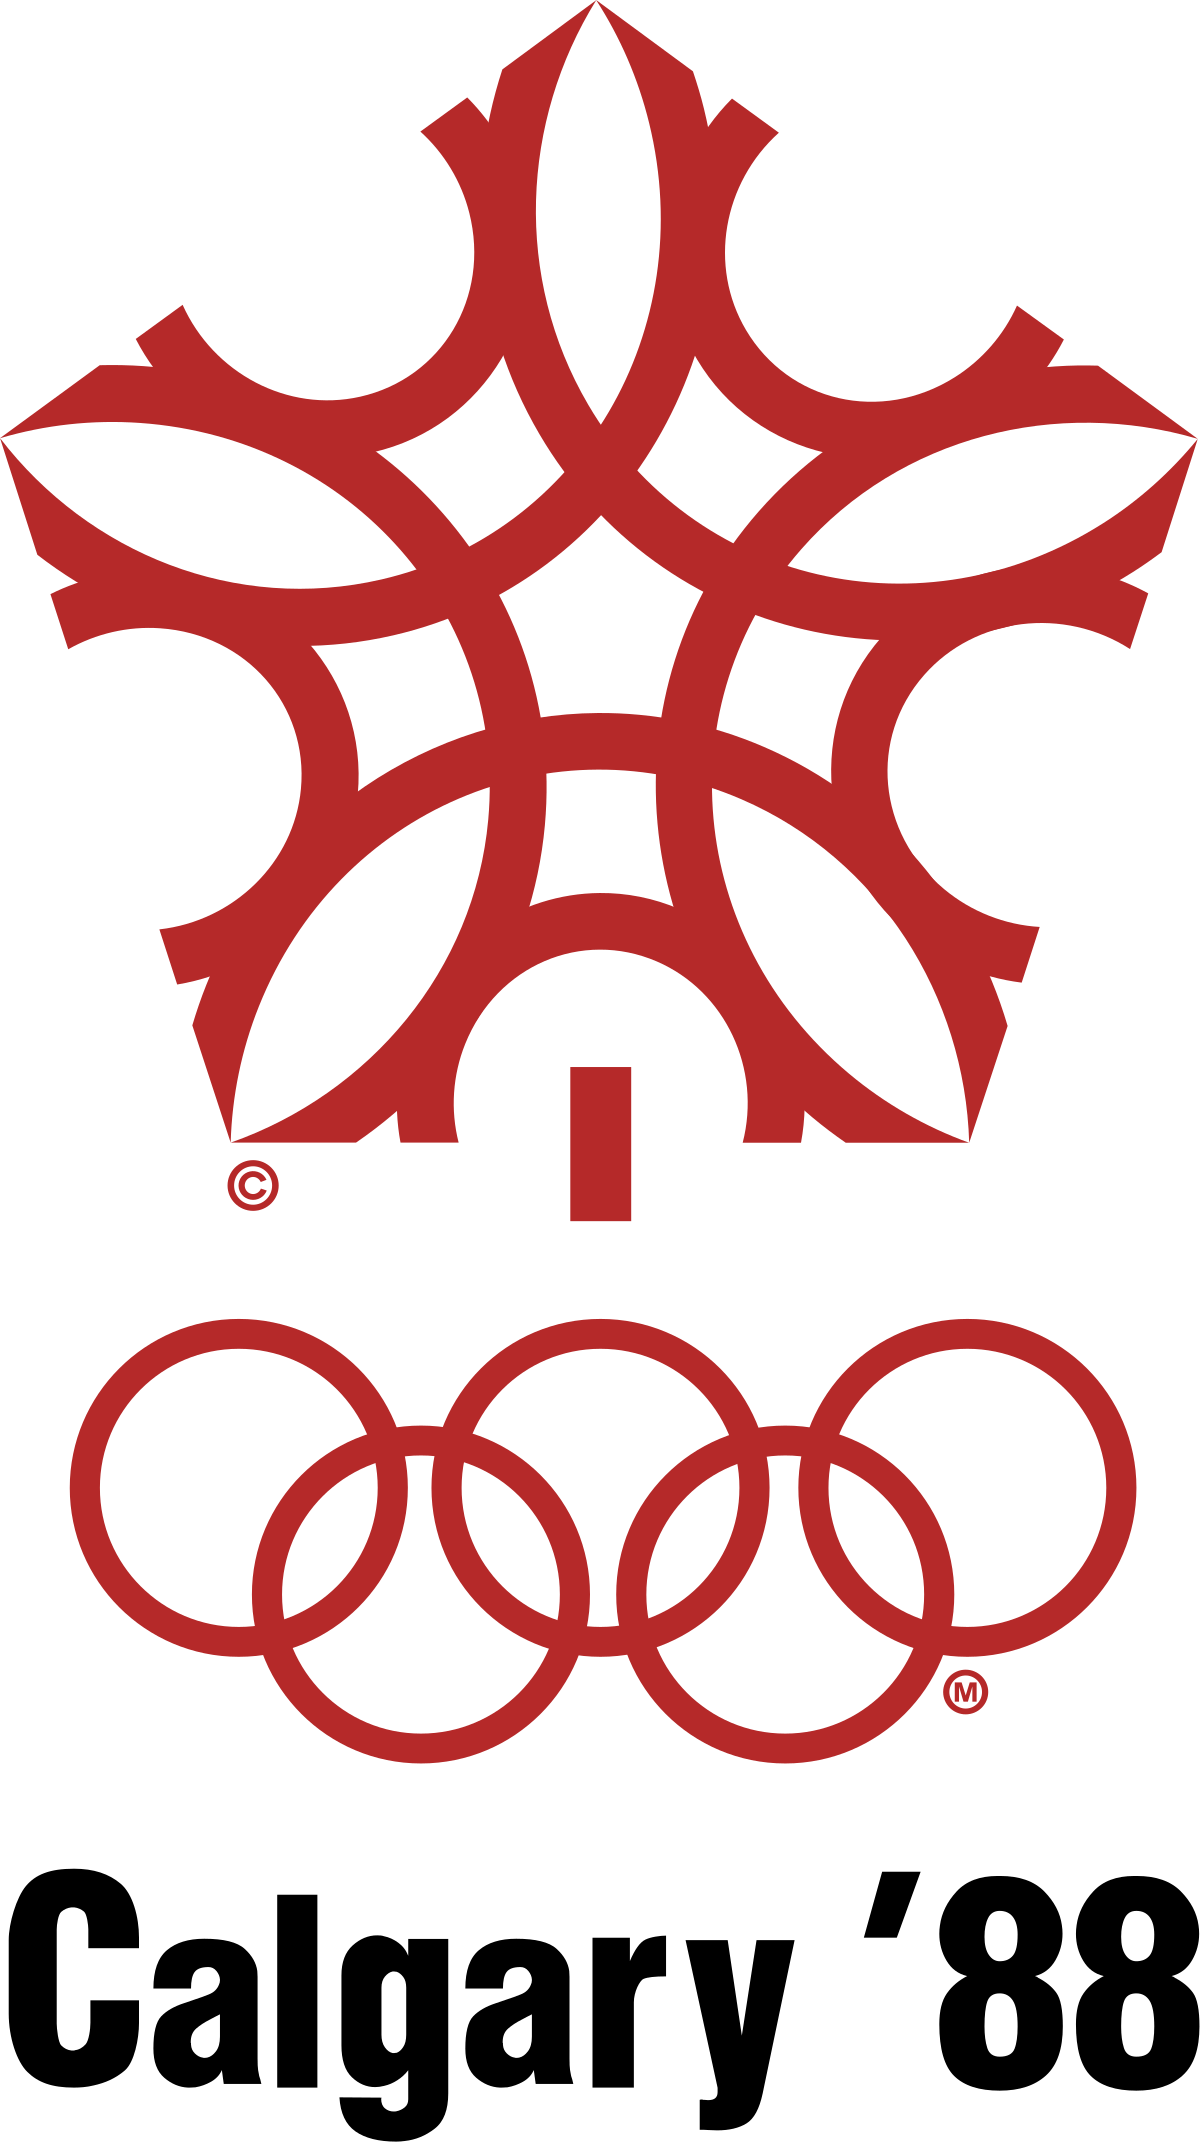 Heart Shaped Olympic Logo - Winter Olympics